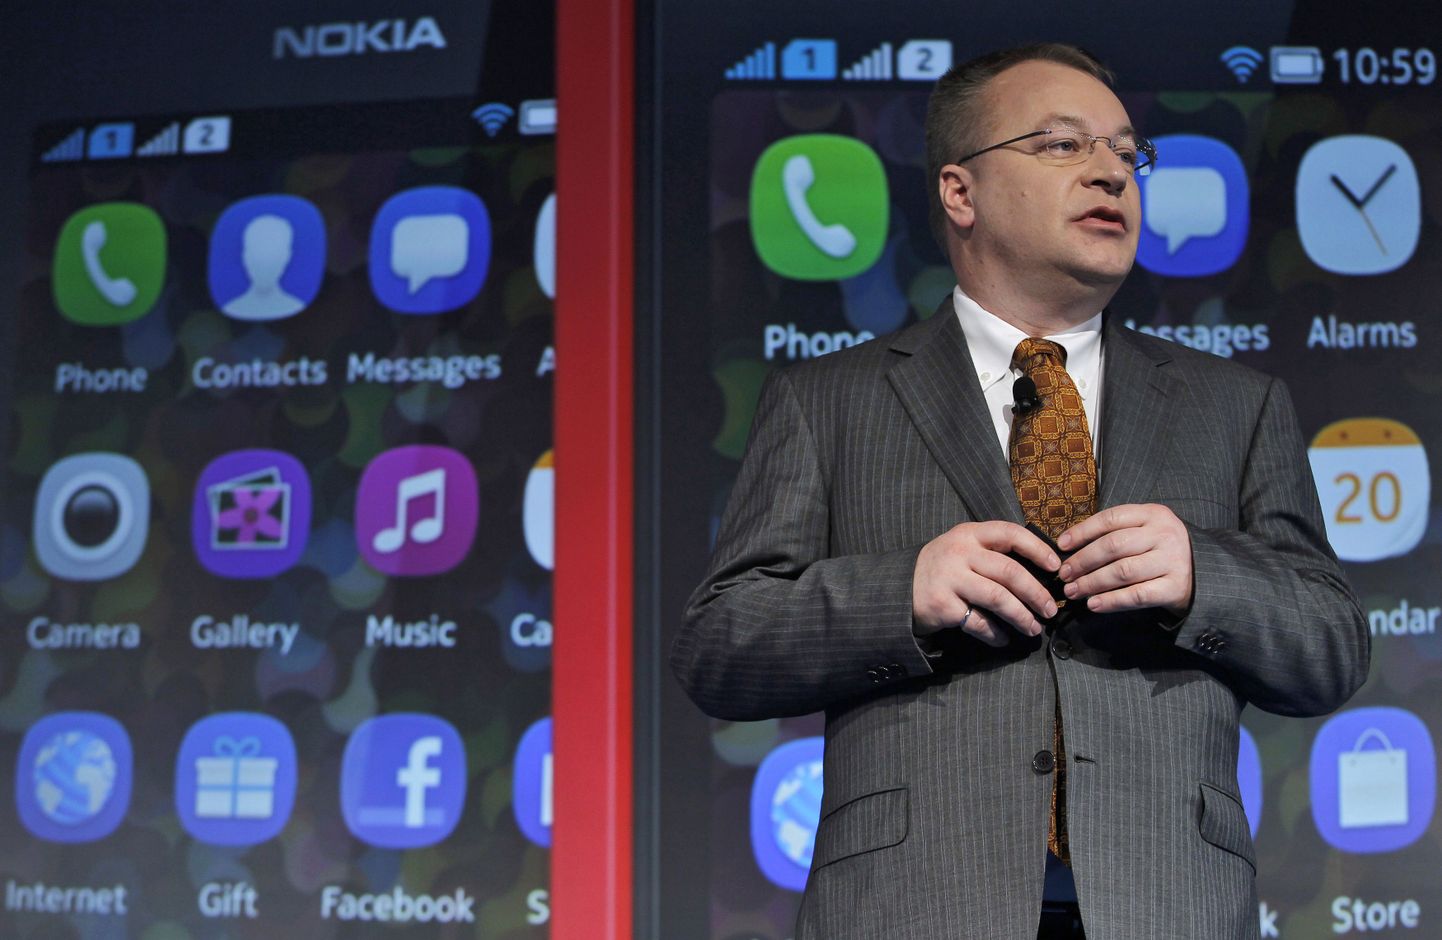 Nokia endine tegevjuht Stephen Elop saab müügitehingu jõustumisel 18,8 miljonit eurot.